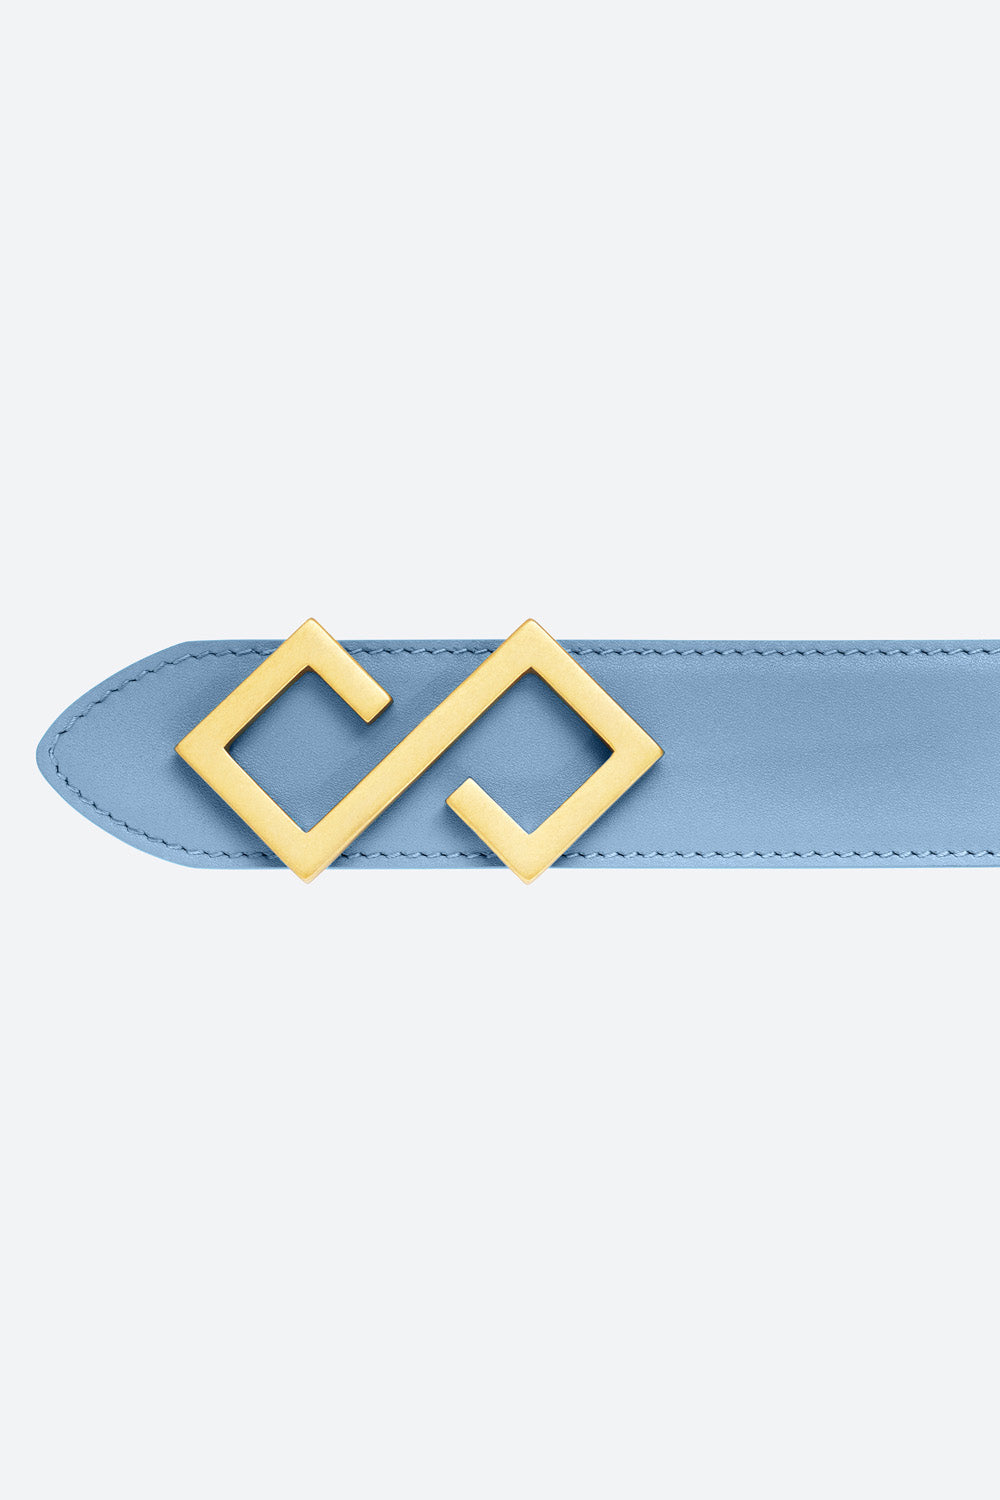 Men's Alvear Belt in Sky Blue, Gold-toned Buckle